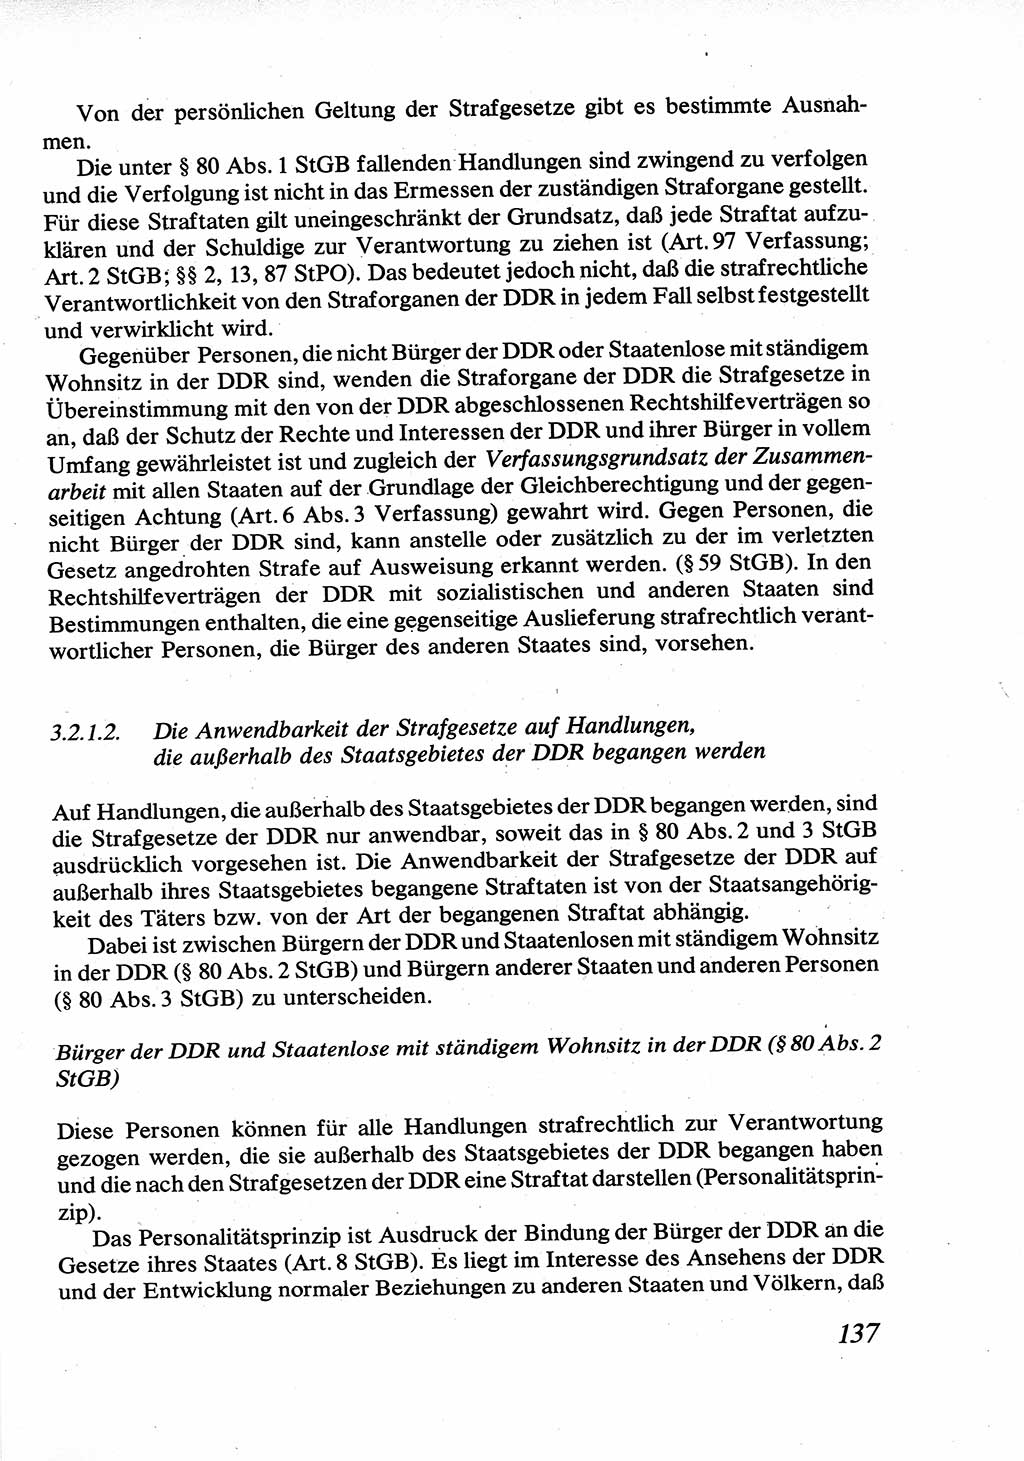 Strafrecht [Deutsche Demokratische Republik (DDR)], Allgemeiner Teil, Lehrbuch 1976, Seite 137 (Strafr. DDR AT Lb. 1976, S. 137)